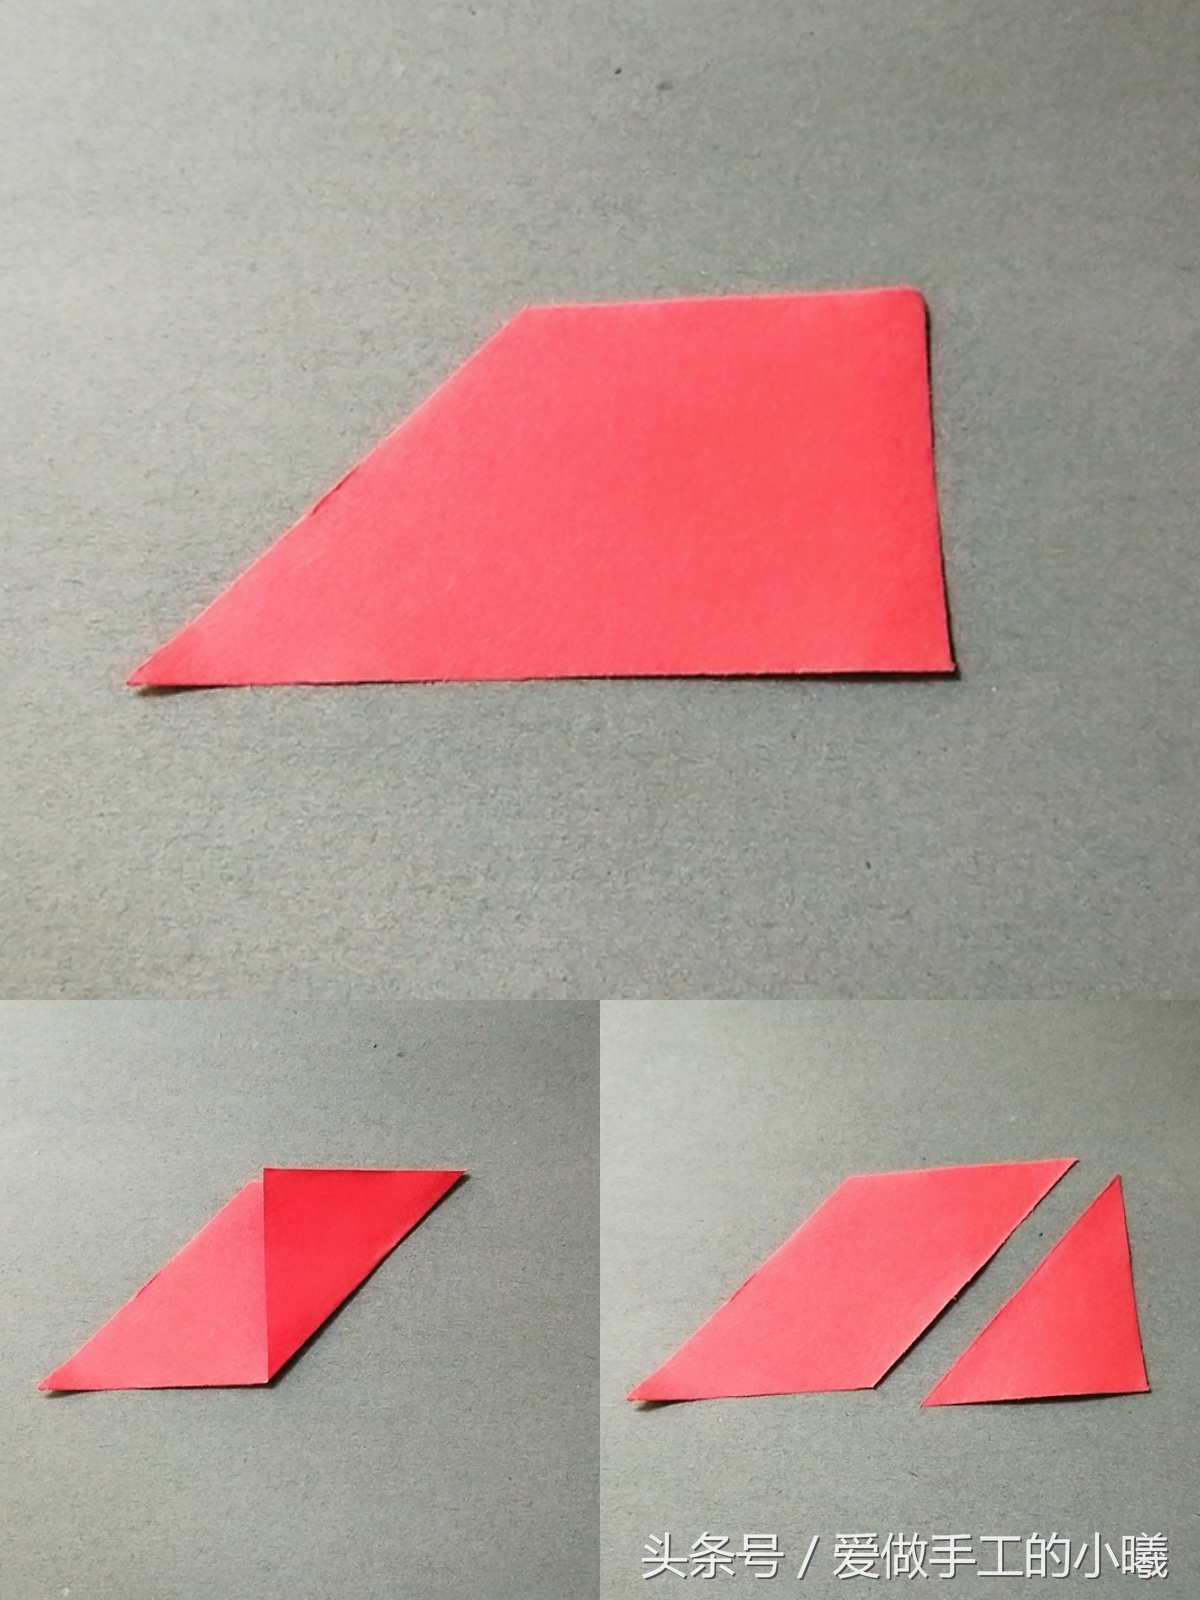 七巧板制作方法(教你用一张纸做一个简易七巧板)